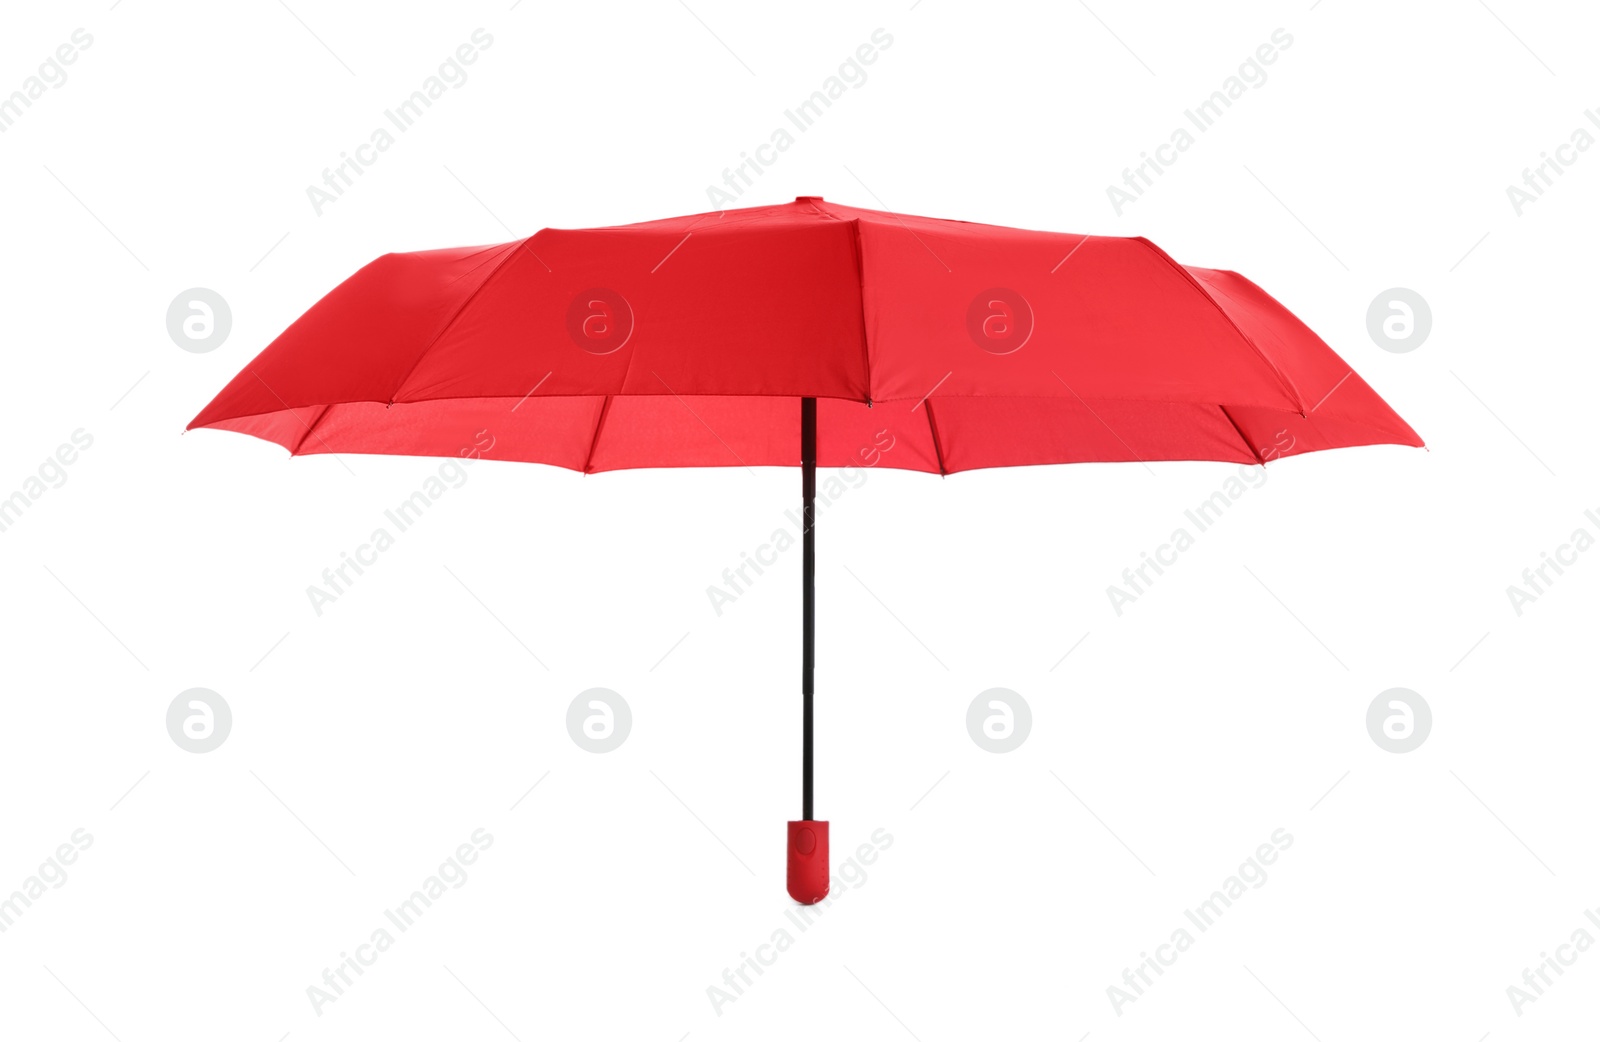 Photo of Stylish open red umbrella isolated on white